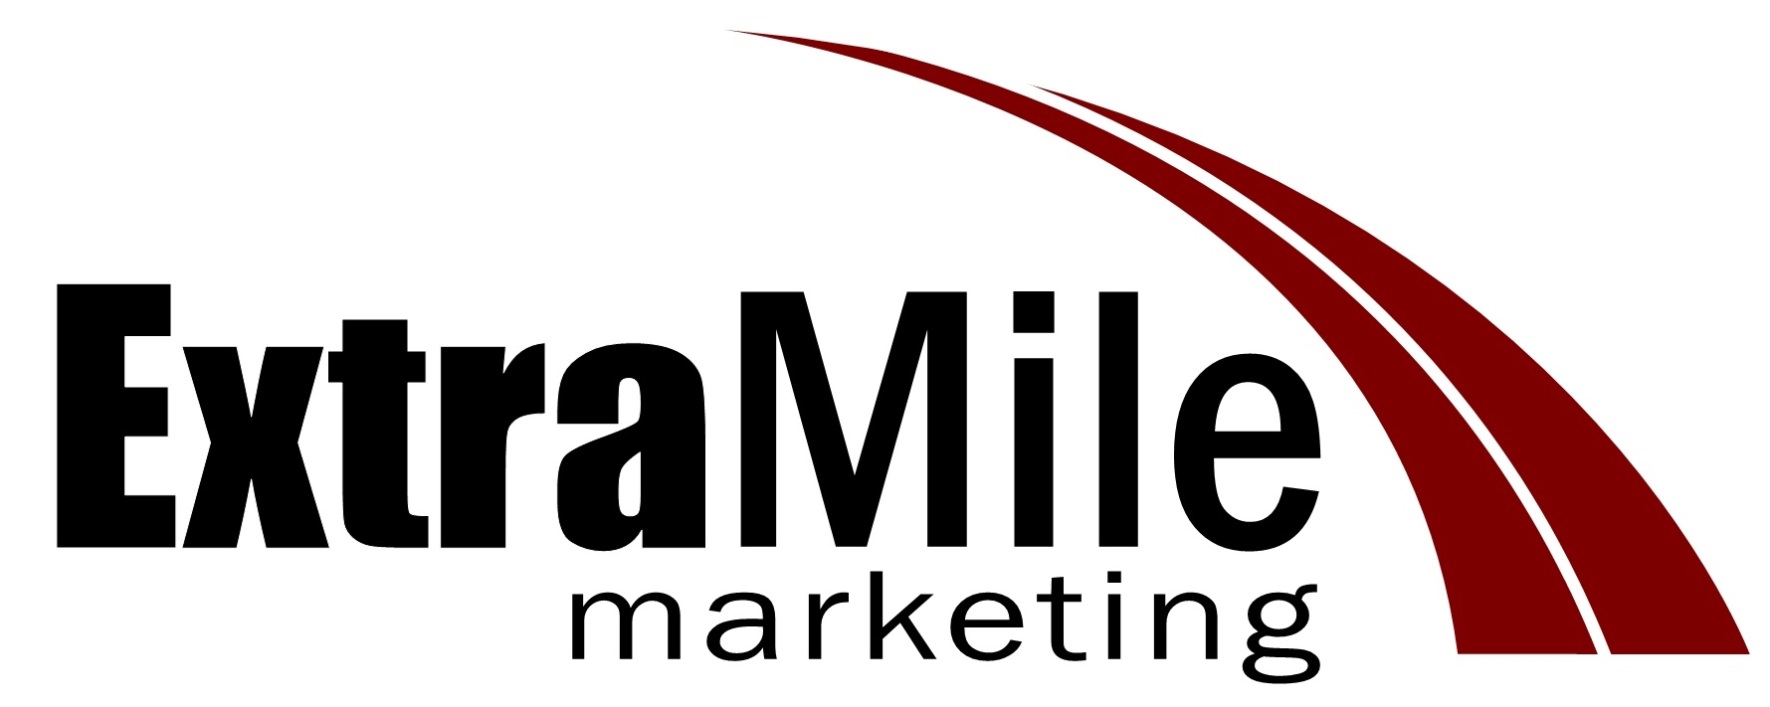 ExtraMile_Marketing_logo